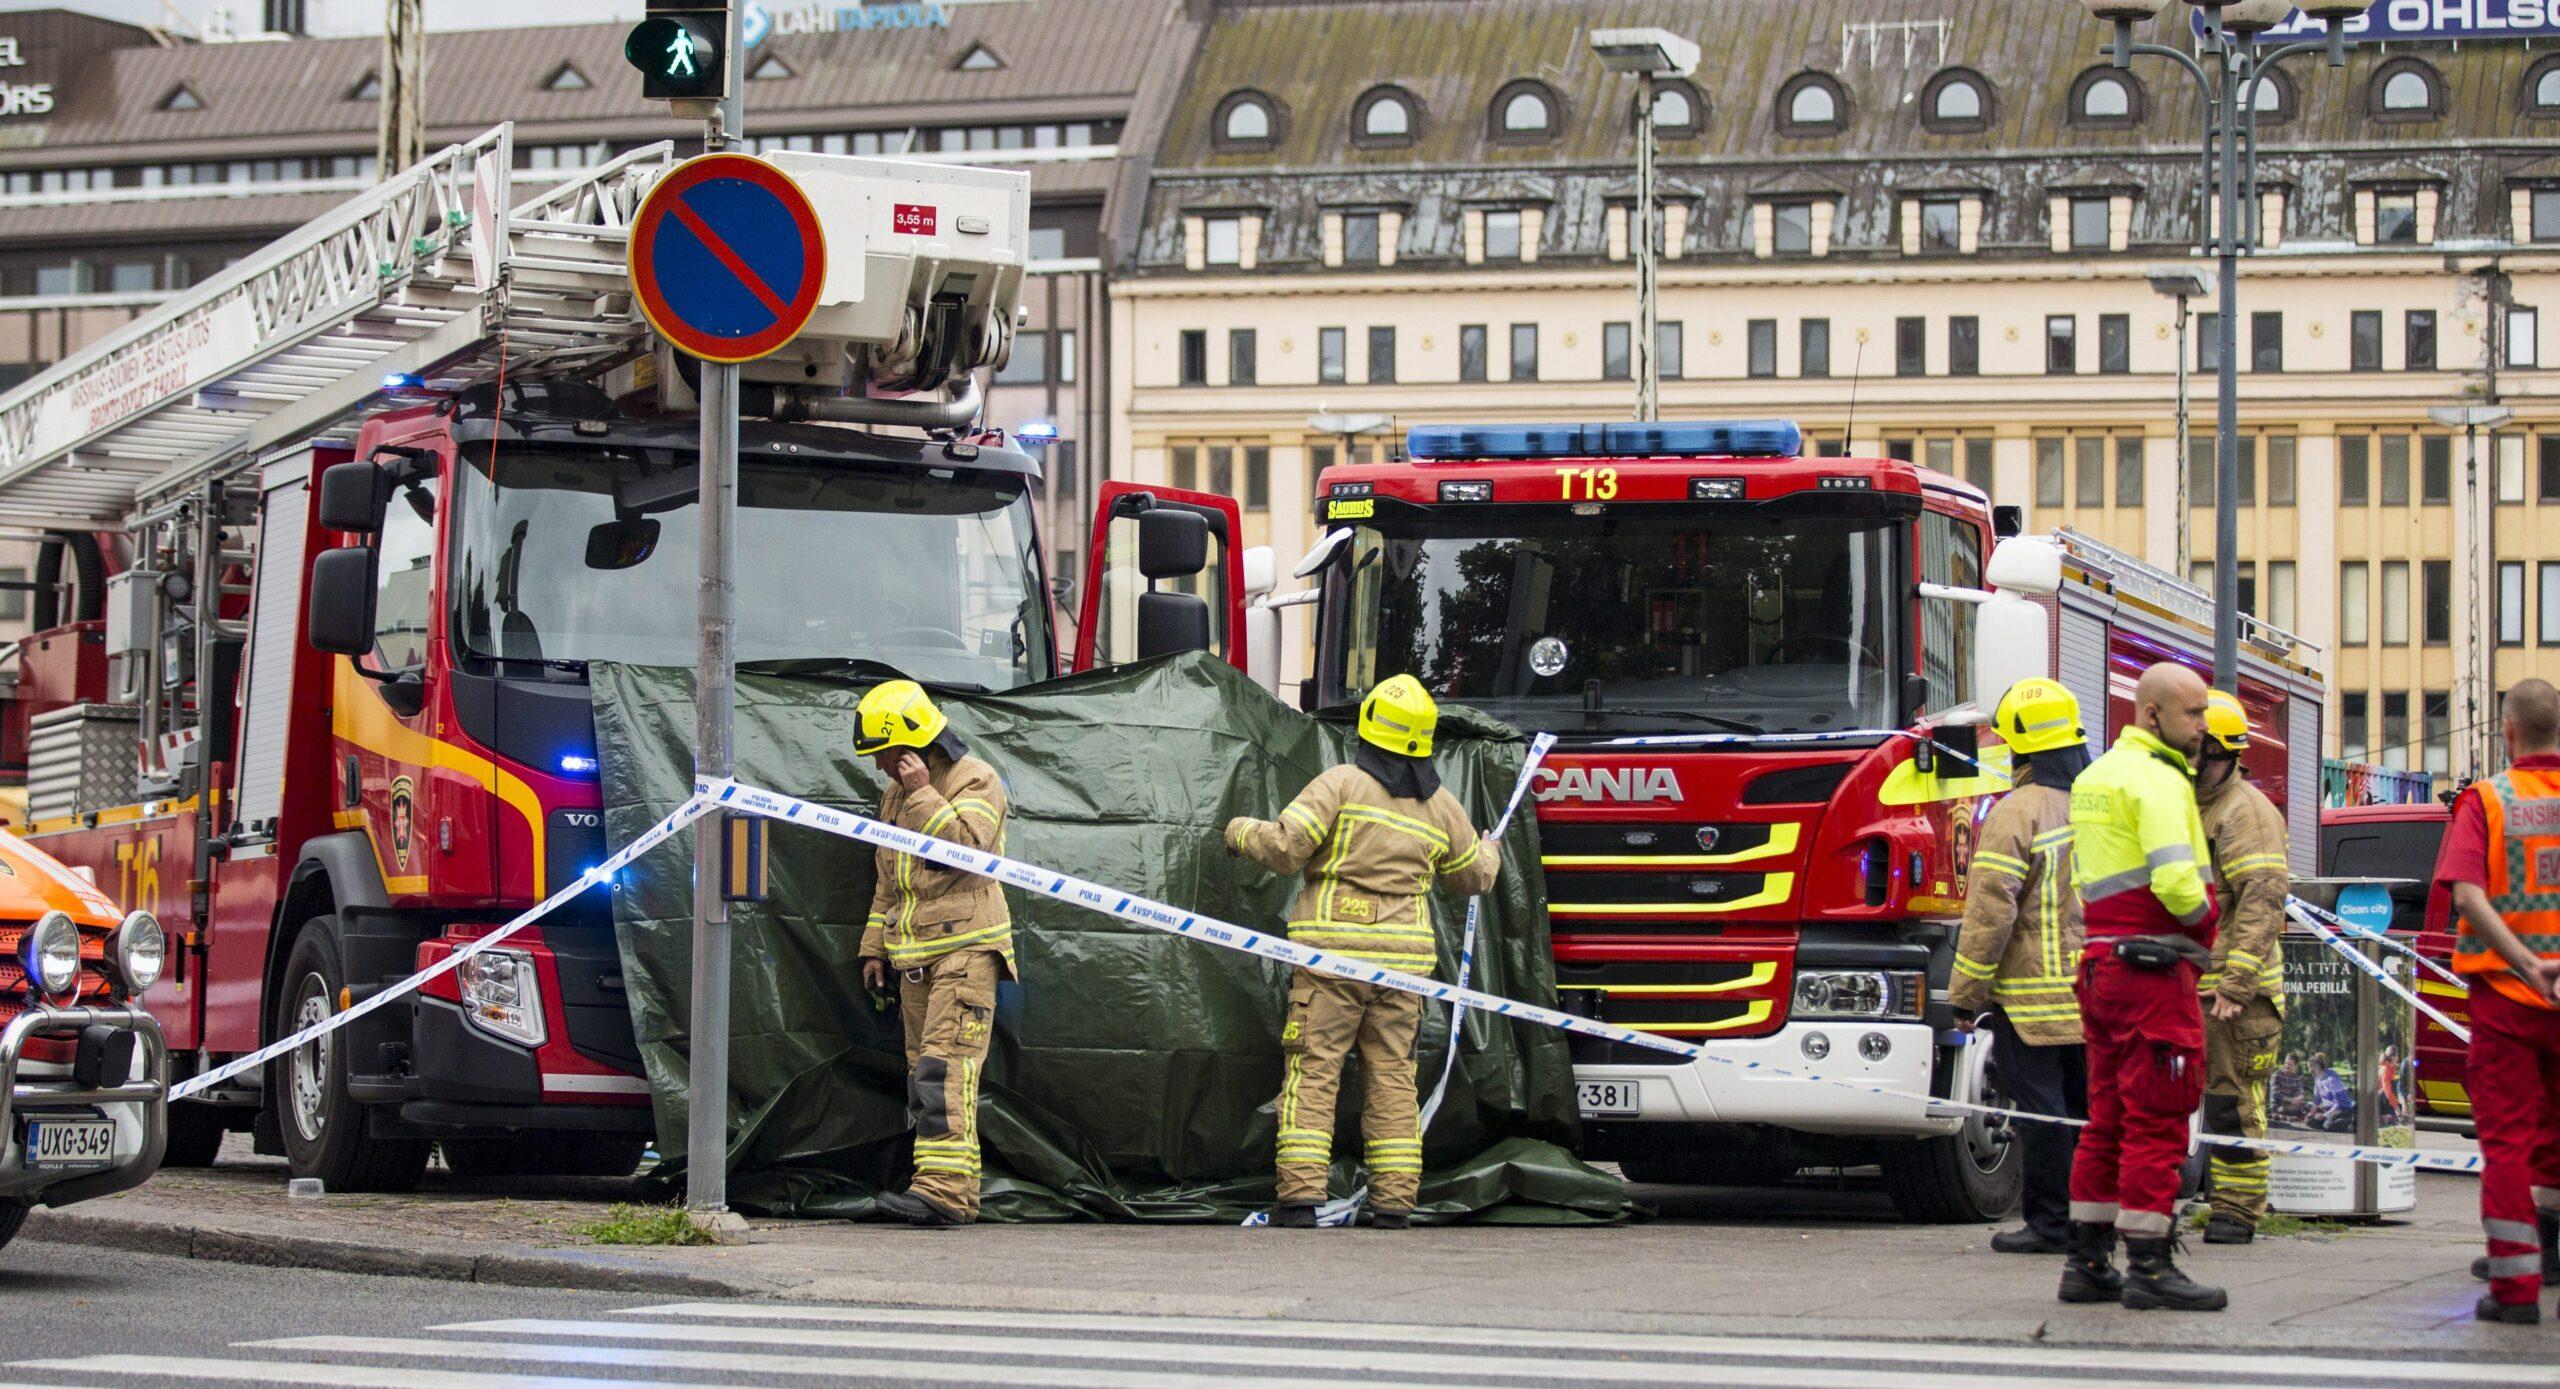 Ataque en centro de la ciudad de Turku, Finlandia, deja dos muertos y seis heridos